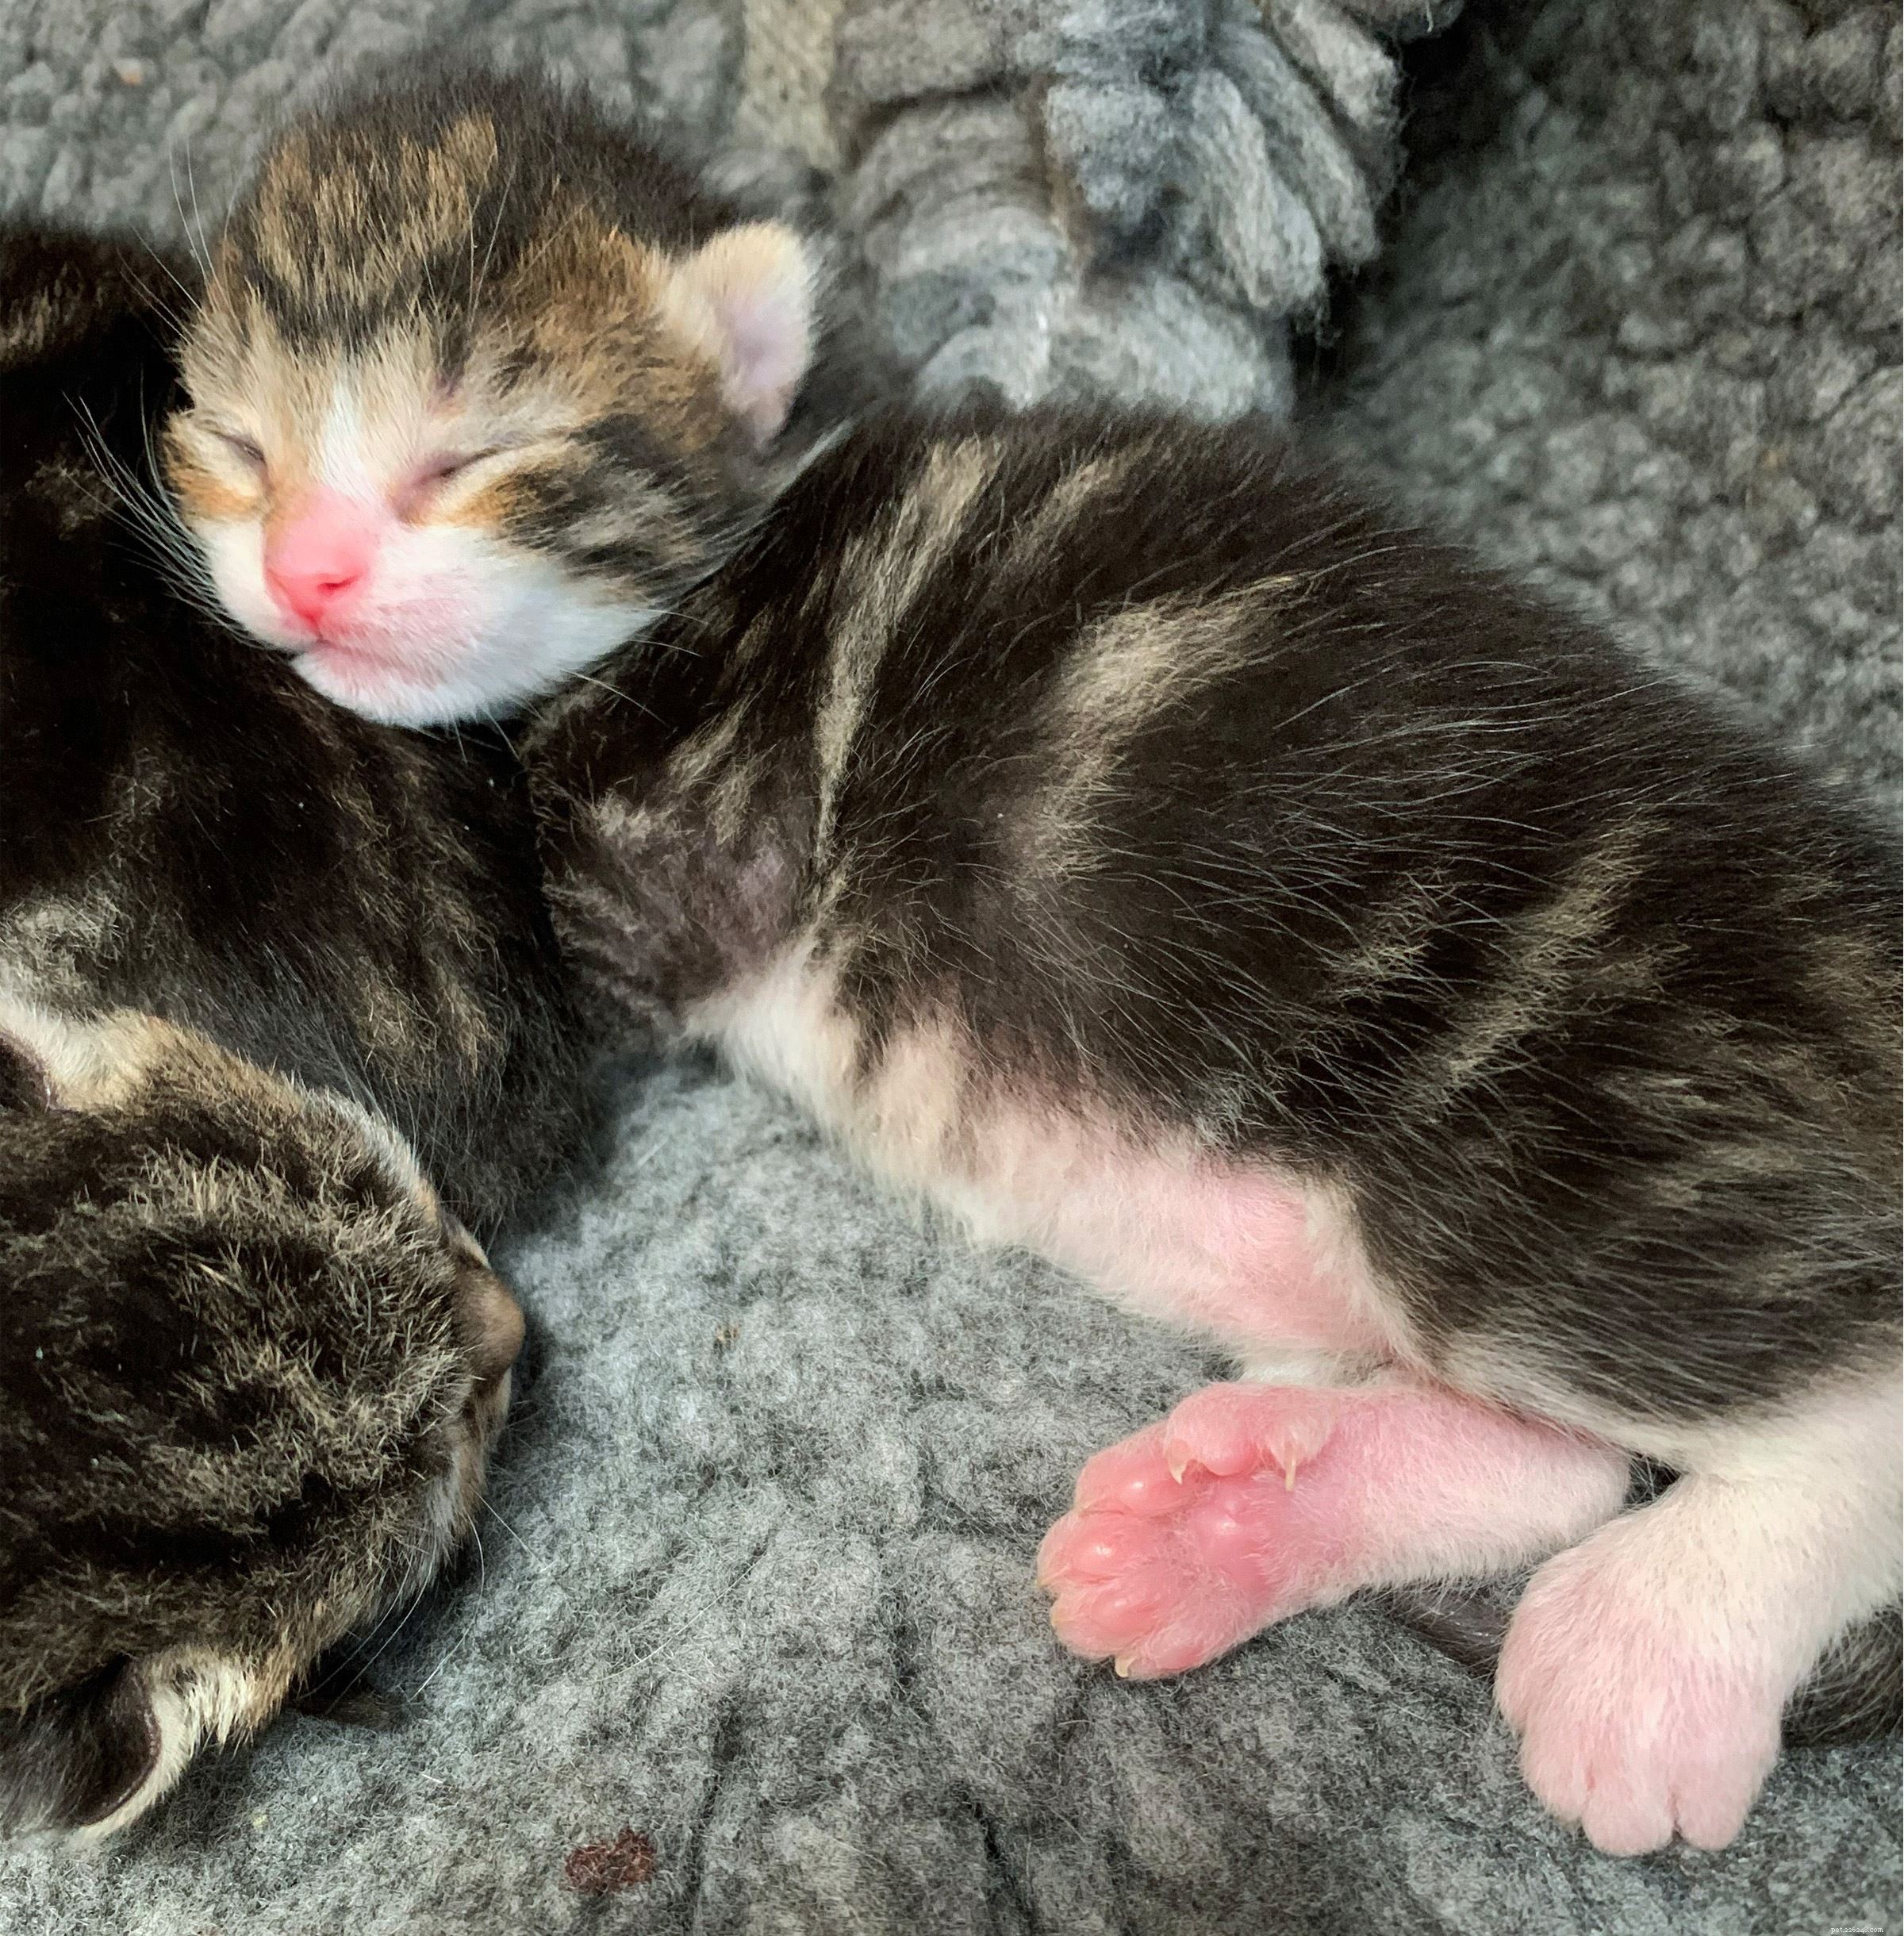 Trojice koťat v Gosportu se narodila se super velkými polydaktylovými tlapkami